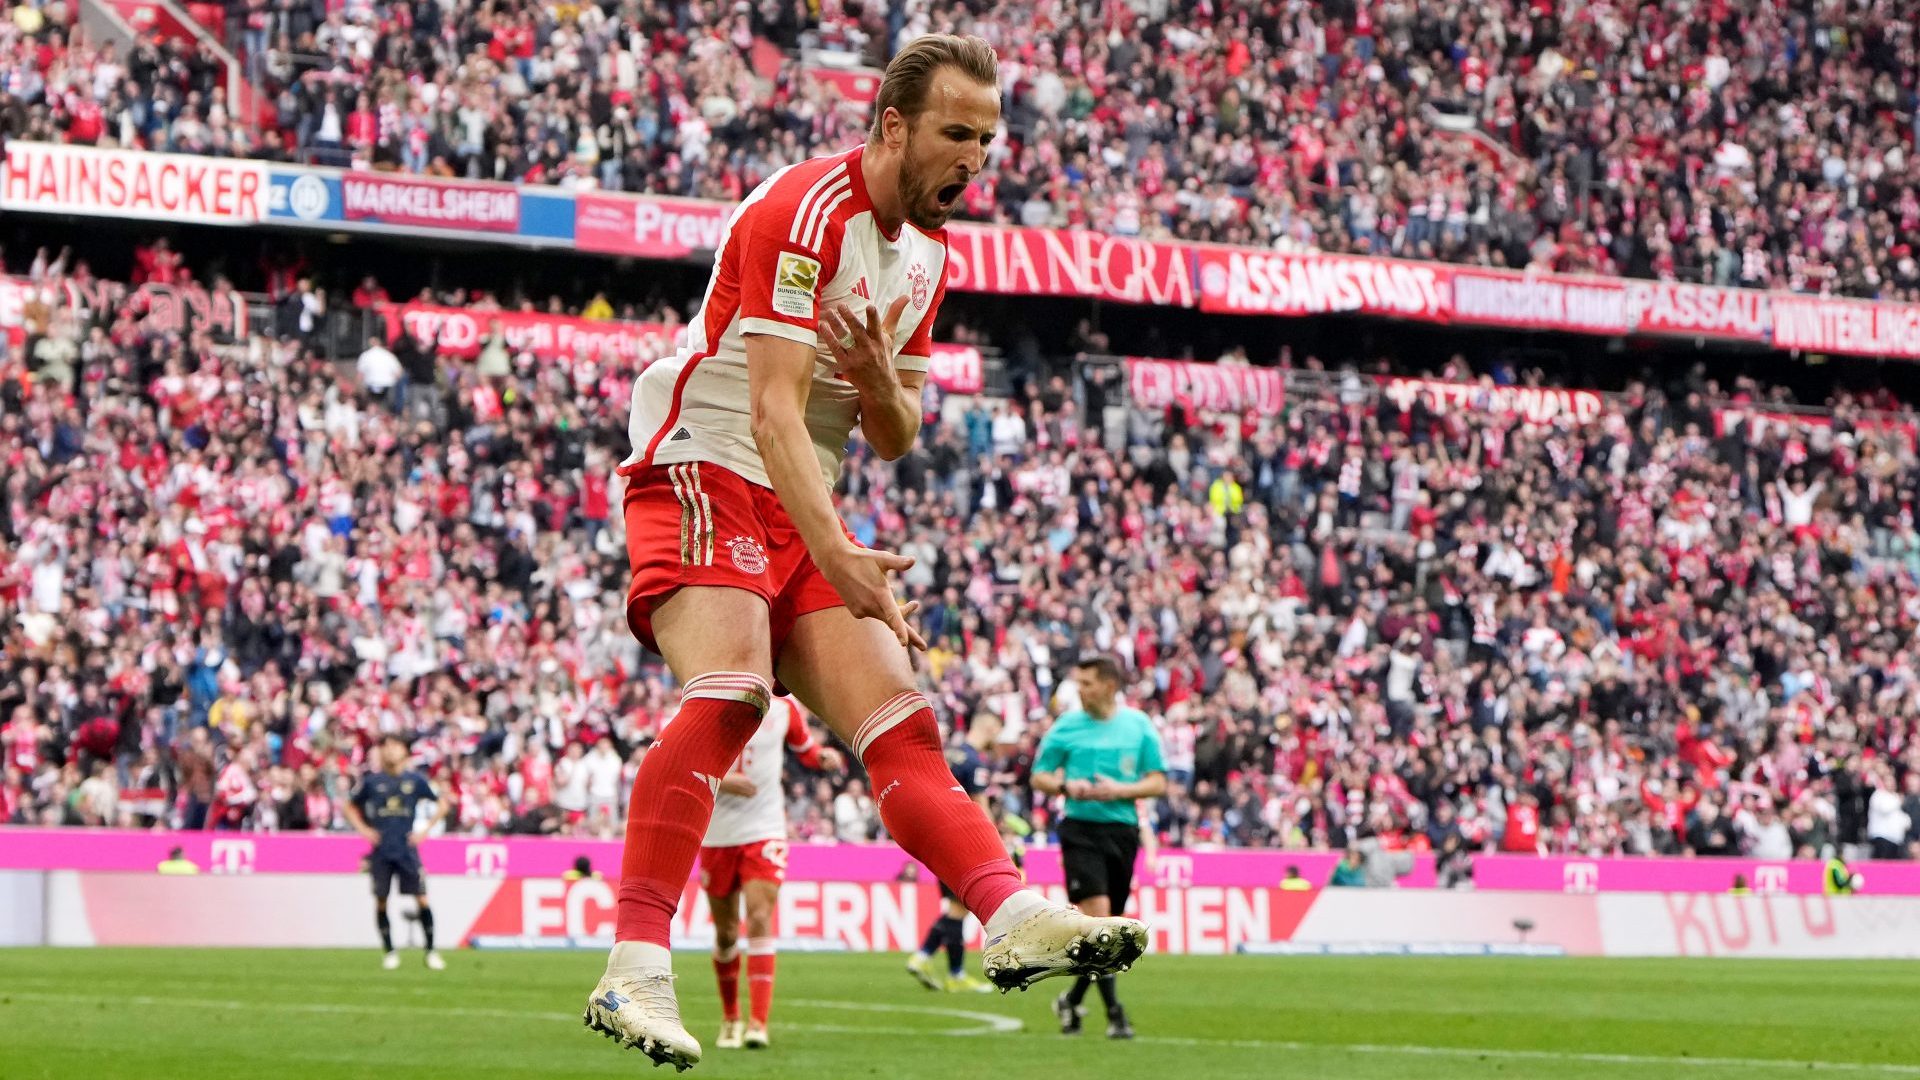 Photo: M. Donato/FC Bayern via Getty Images